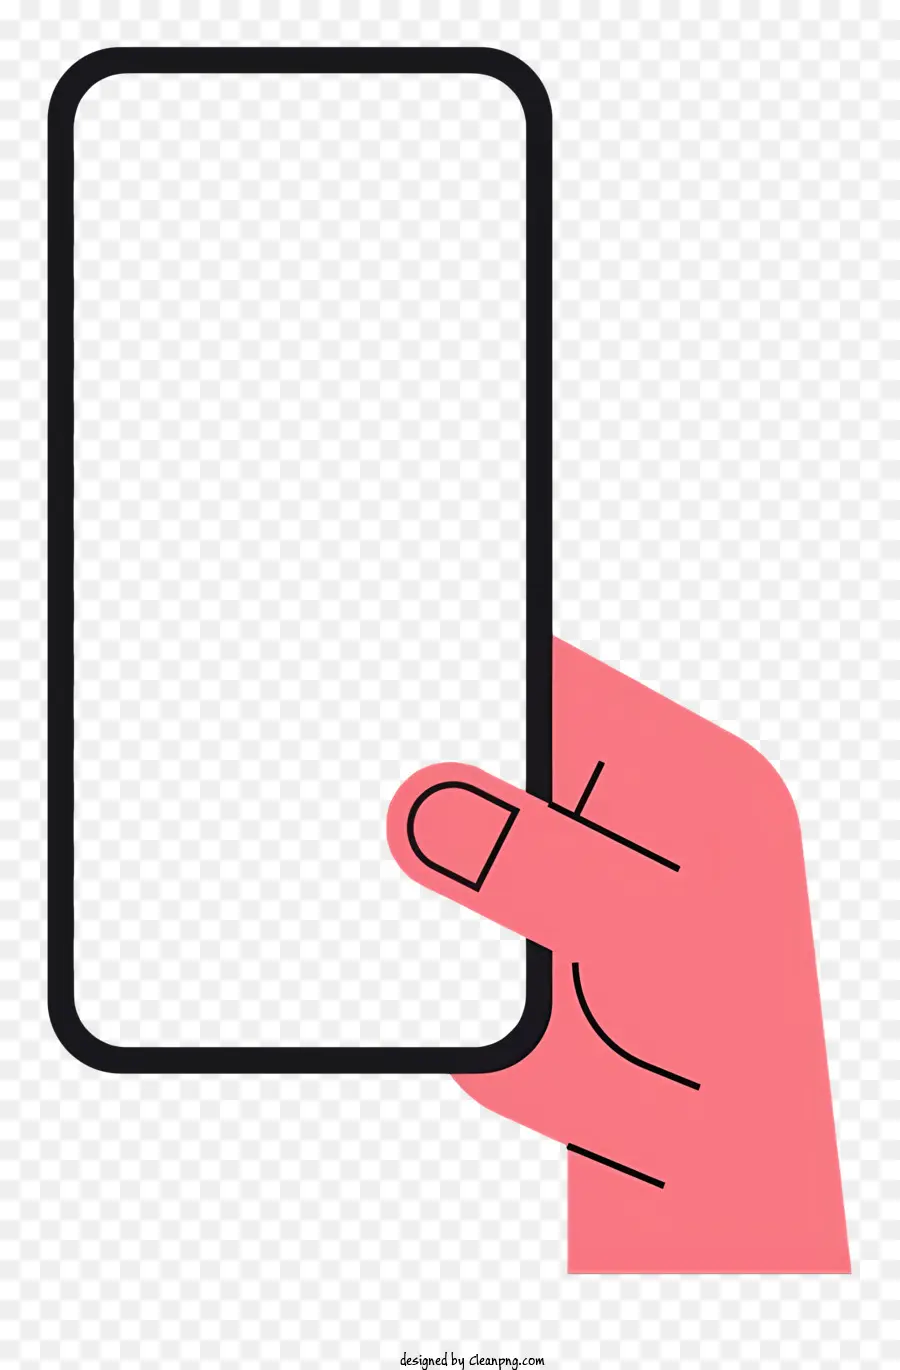 Handhonting Smartphone -Bildschirm auf schwarzem Hintergrund natürliche Handposition Einfache Sichtbarkeit des Bildschirms - Hand hält Smartphone mit klarem Bildschirmanzeige